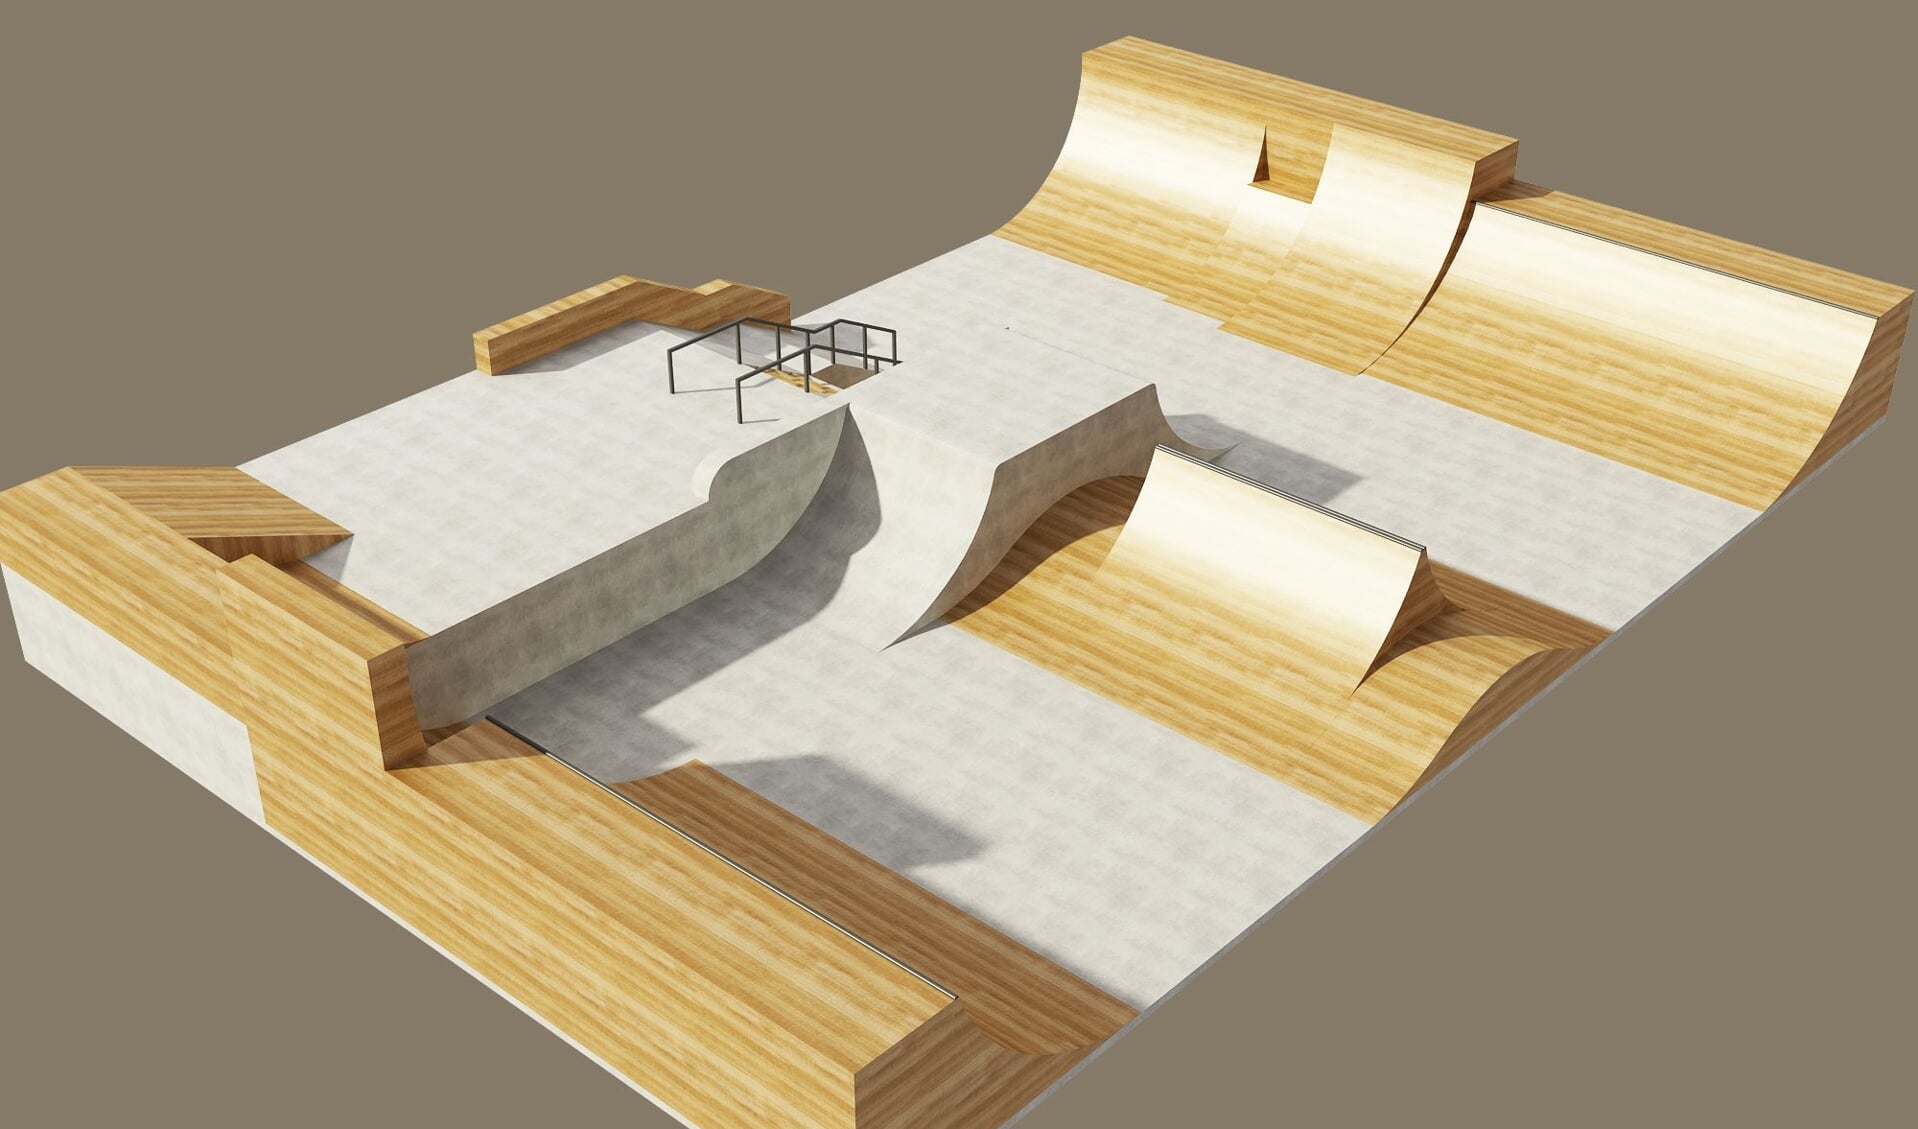 Elia heeft al een digitaal ontwerp gemaakt van hoe het skatepark zou kunnen worden.